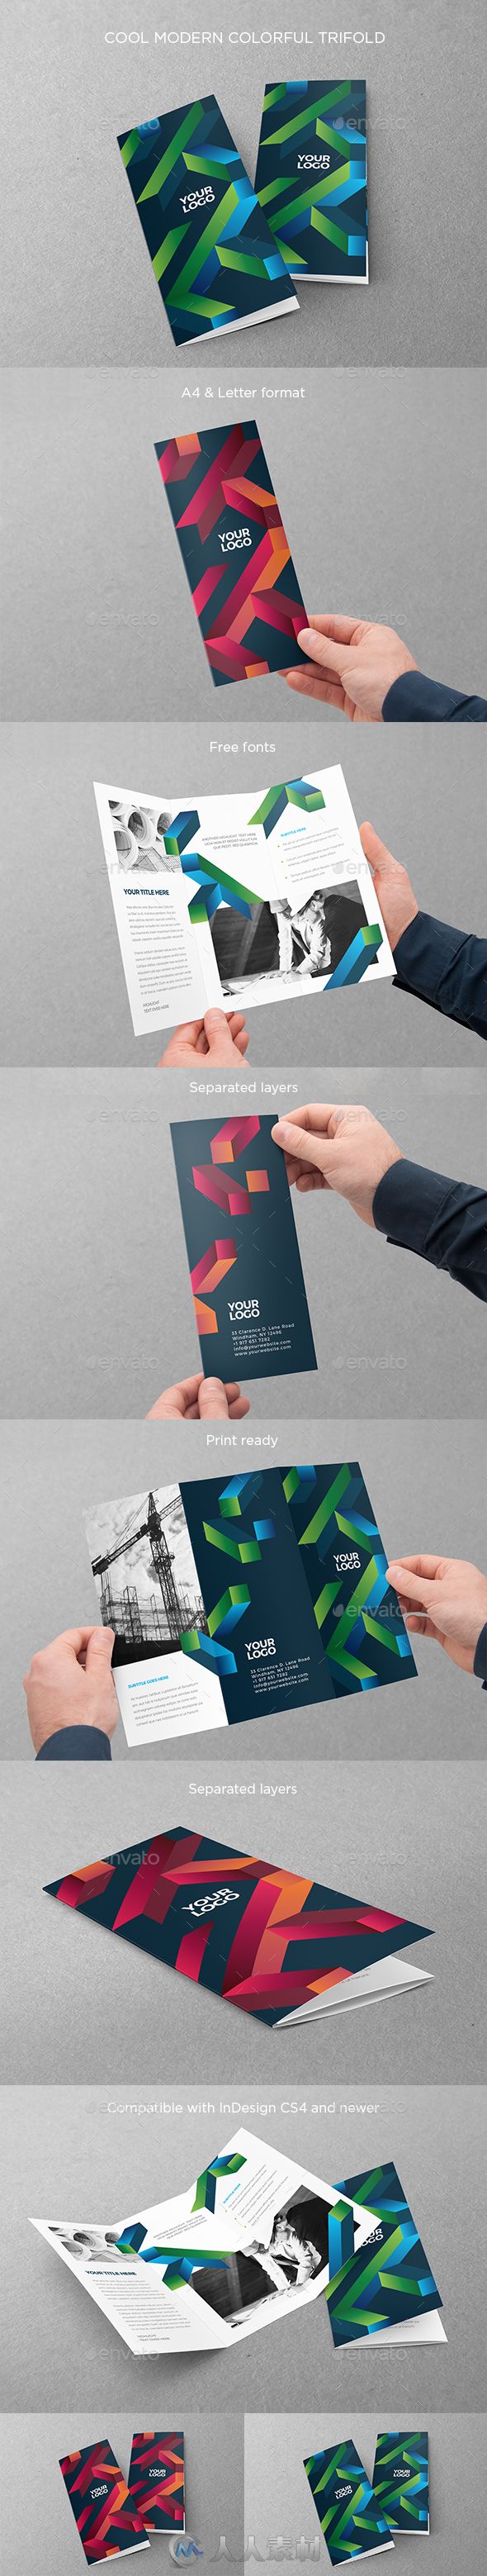 现代简单干净五颜六色的三折小册子indesign排版模板